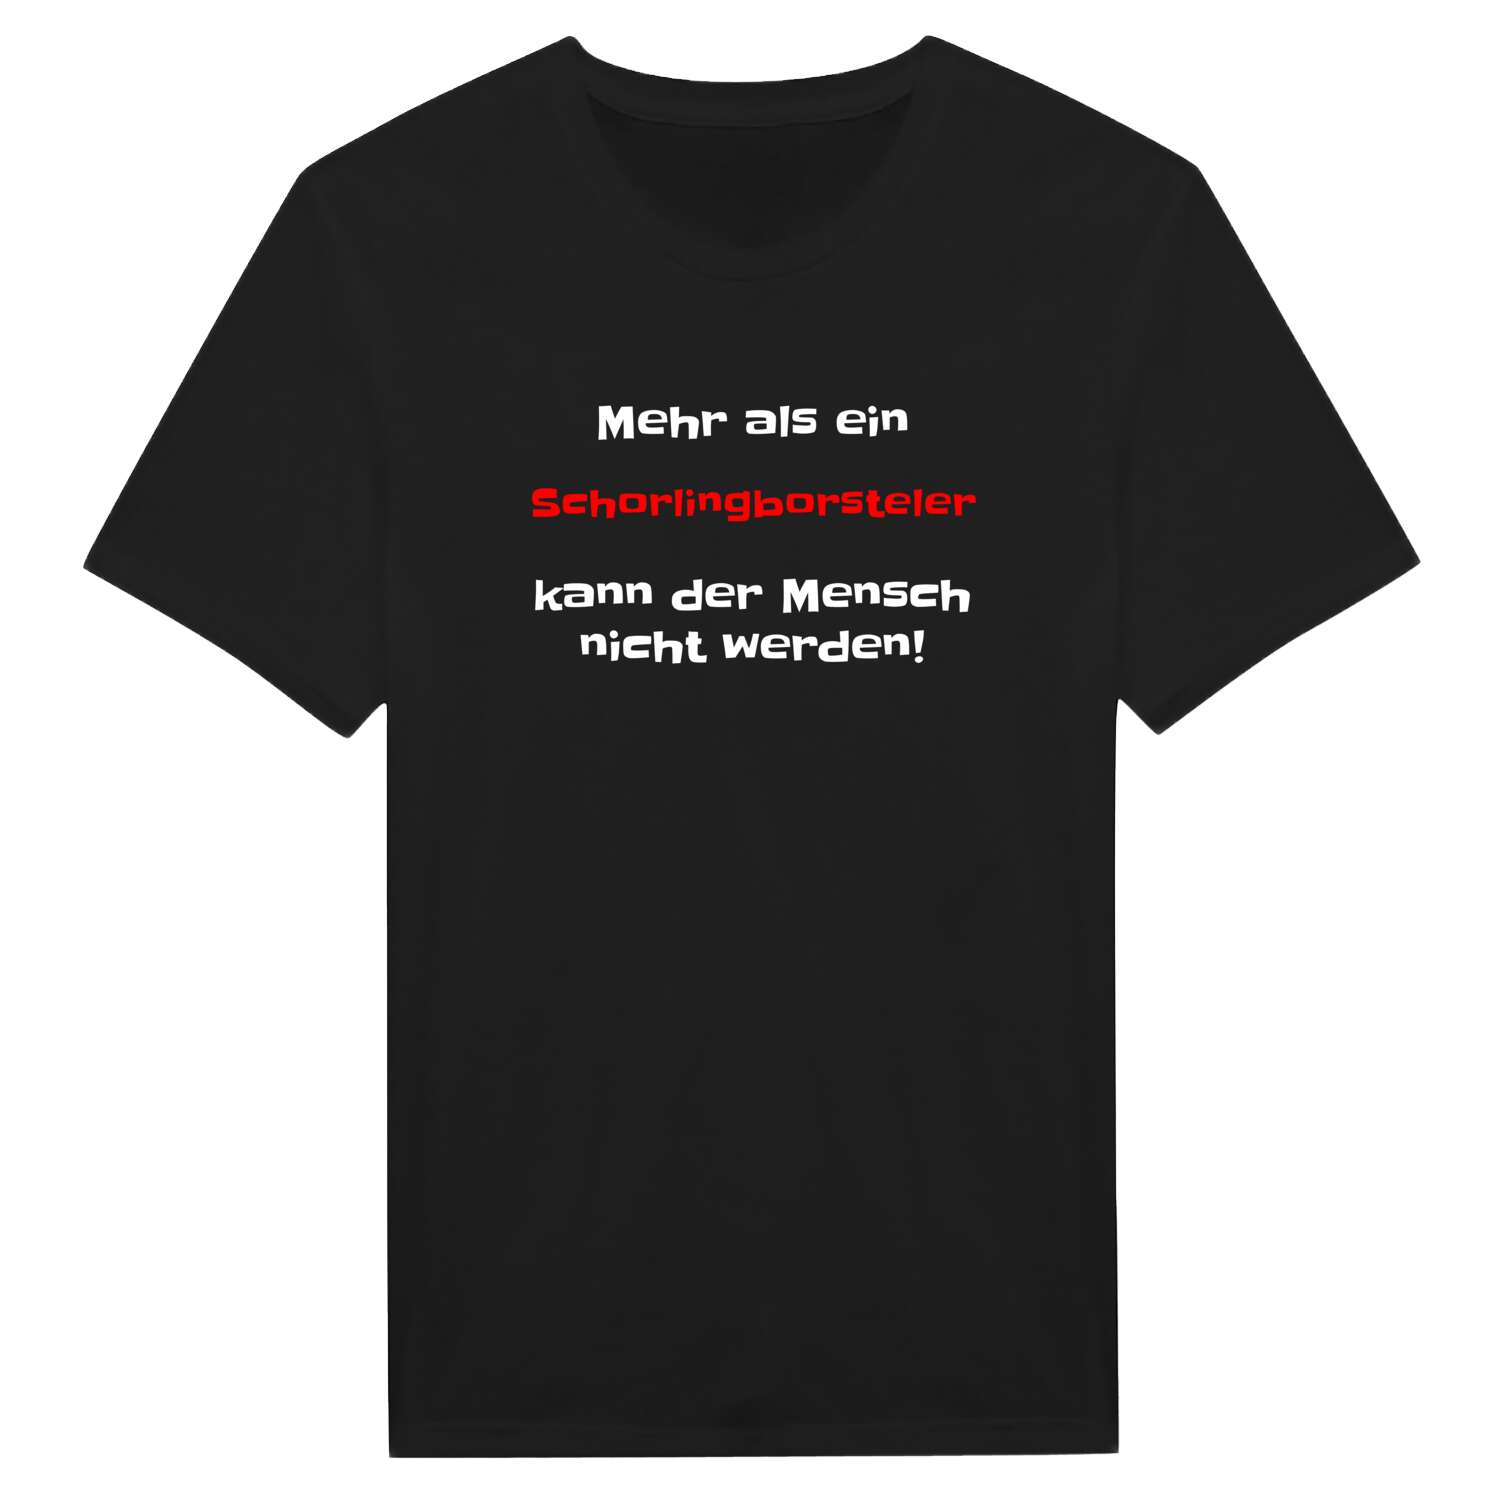 Schorlingborstel T-Shirt »Mehr als ein«